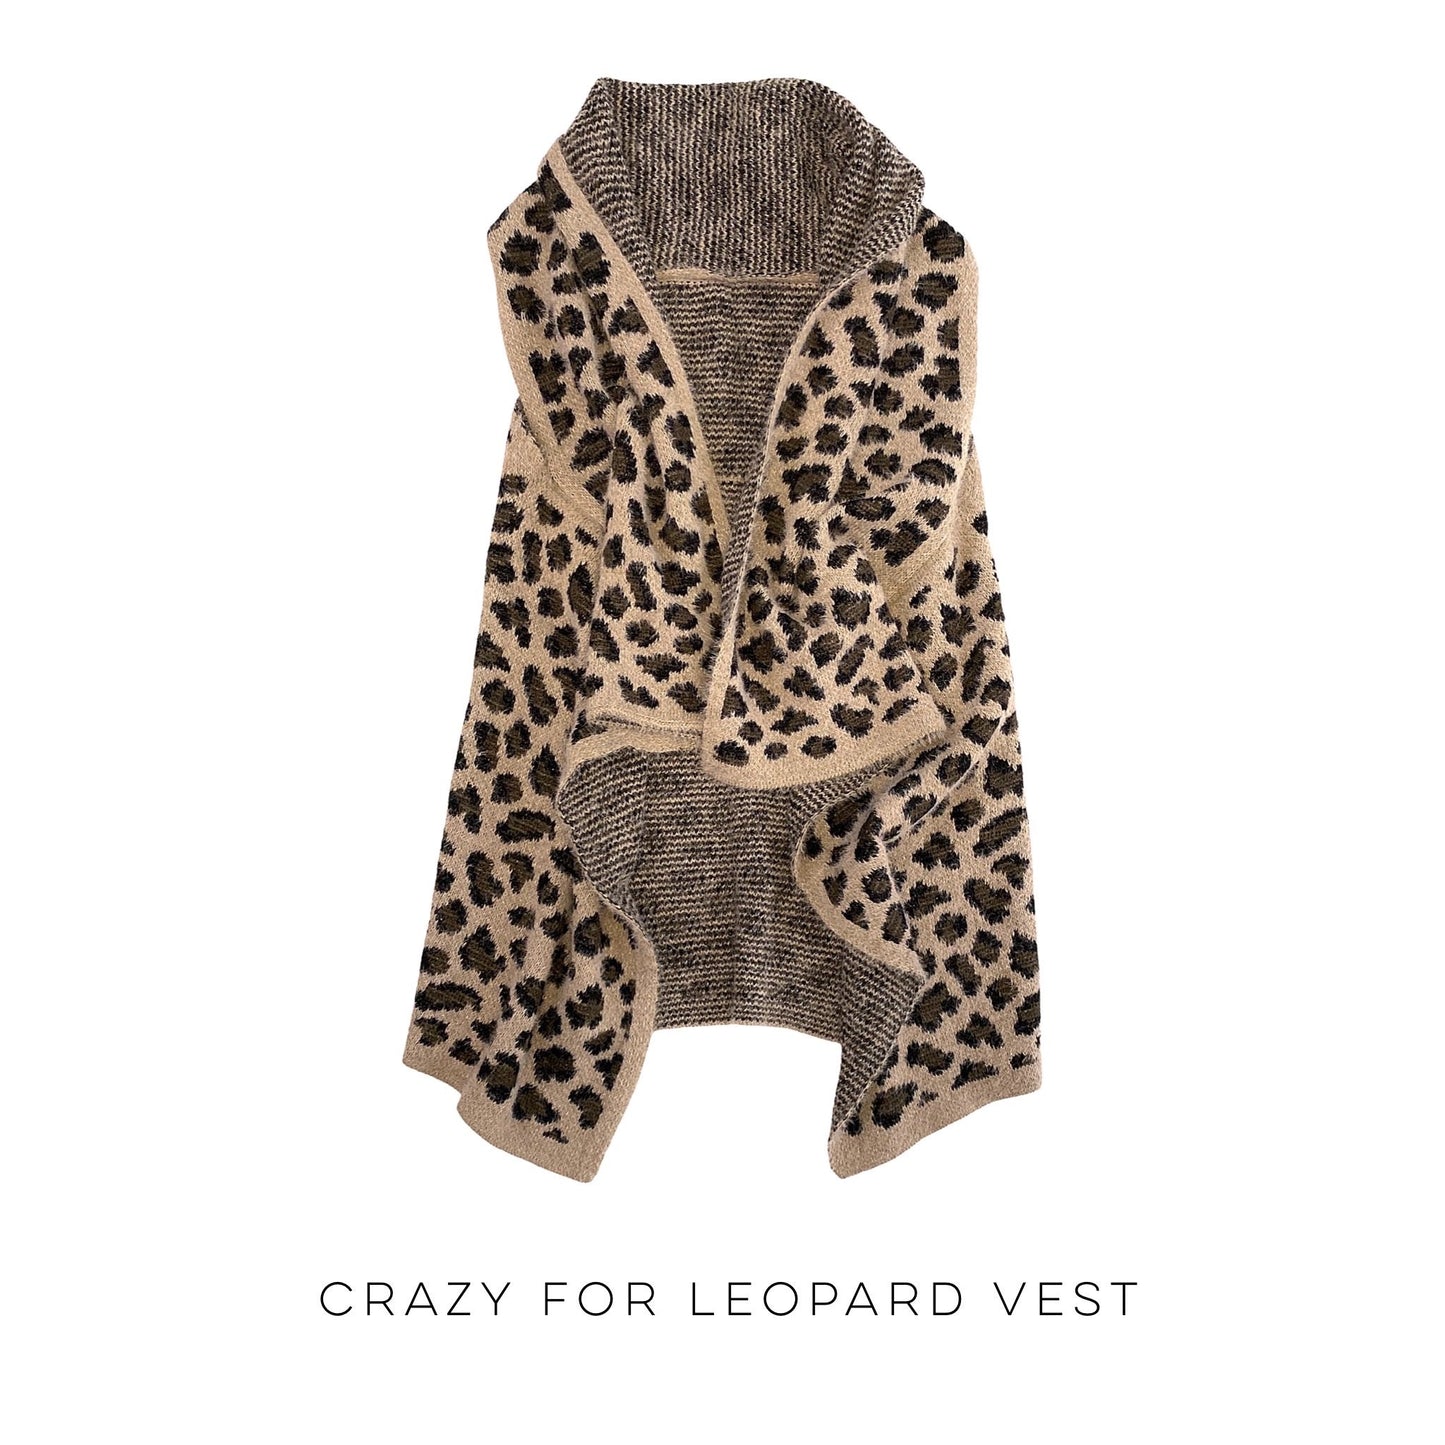 Crazy for Leopard Vest!